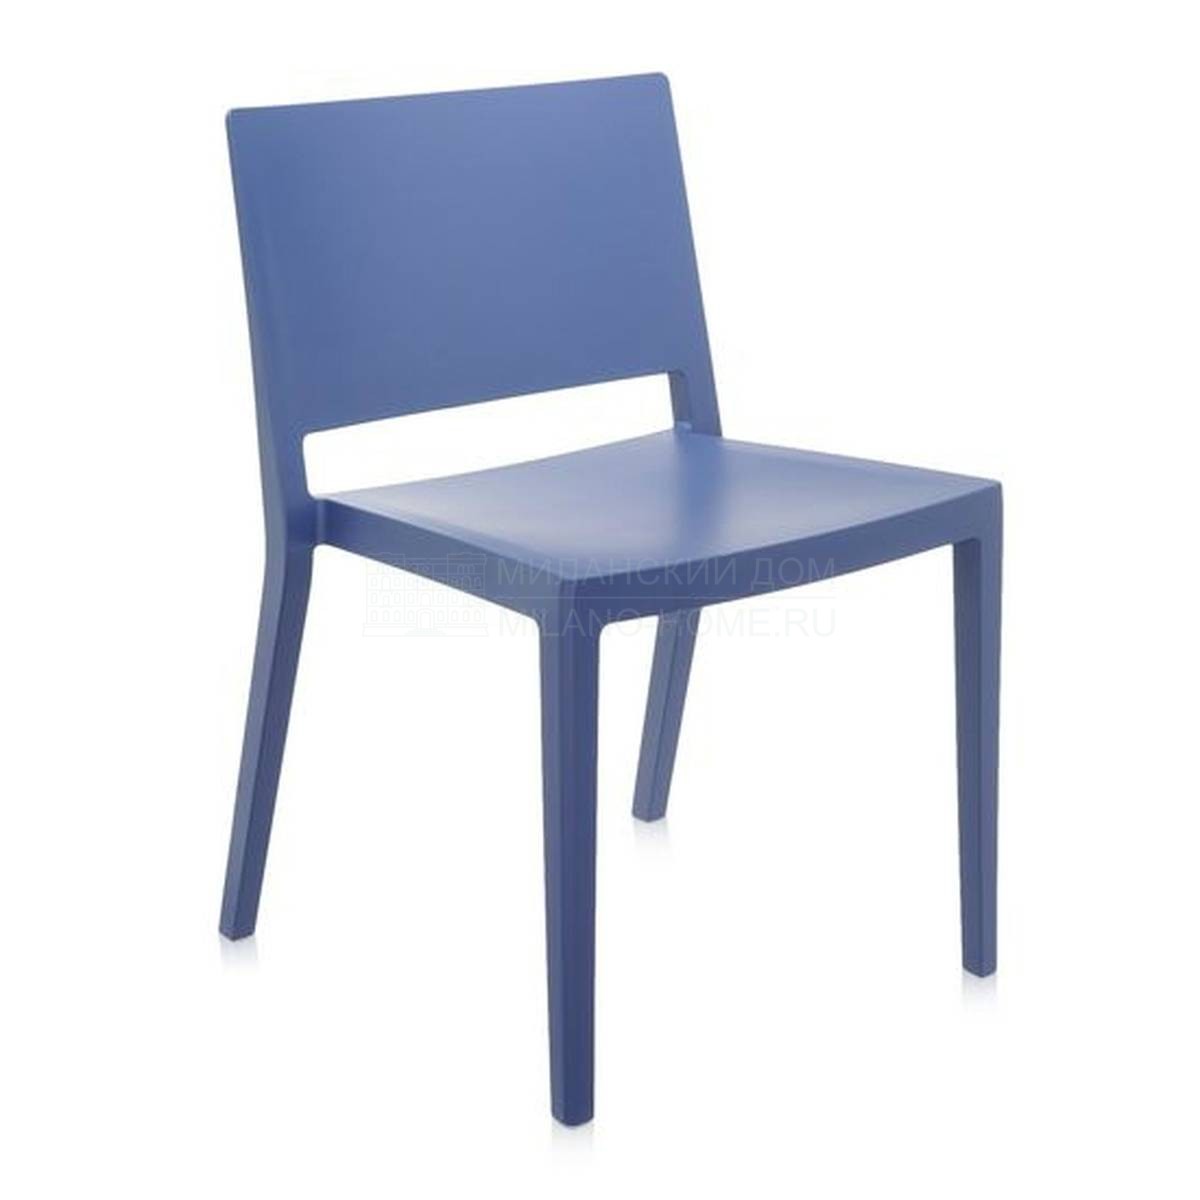 Металлический / Пластиковый стул Lizz из Италии фабрики KARTELL